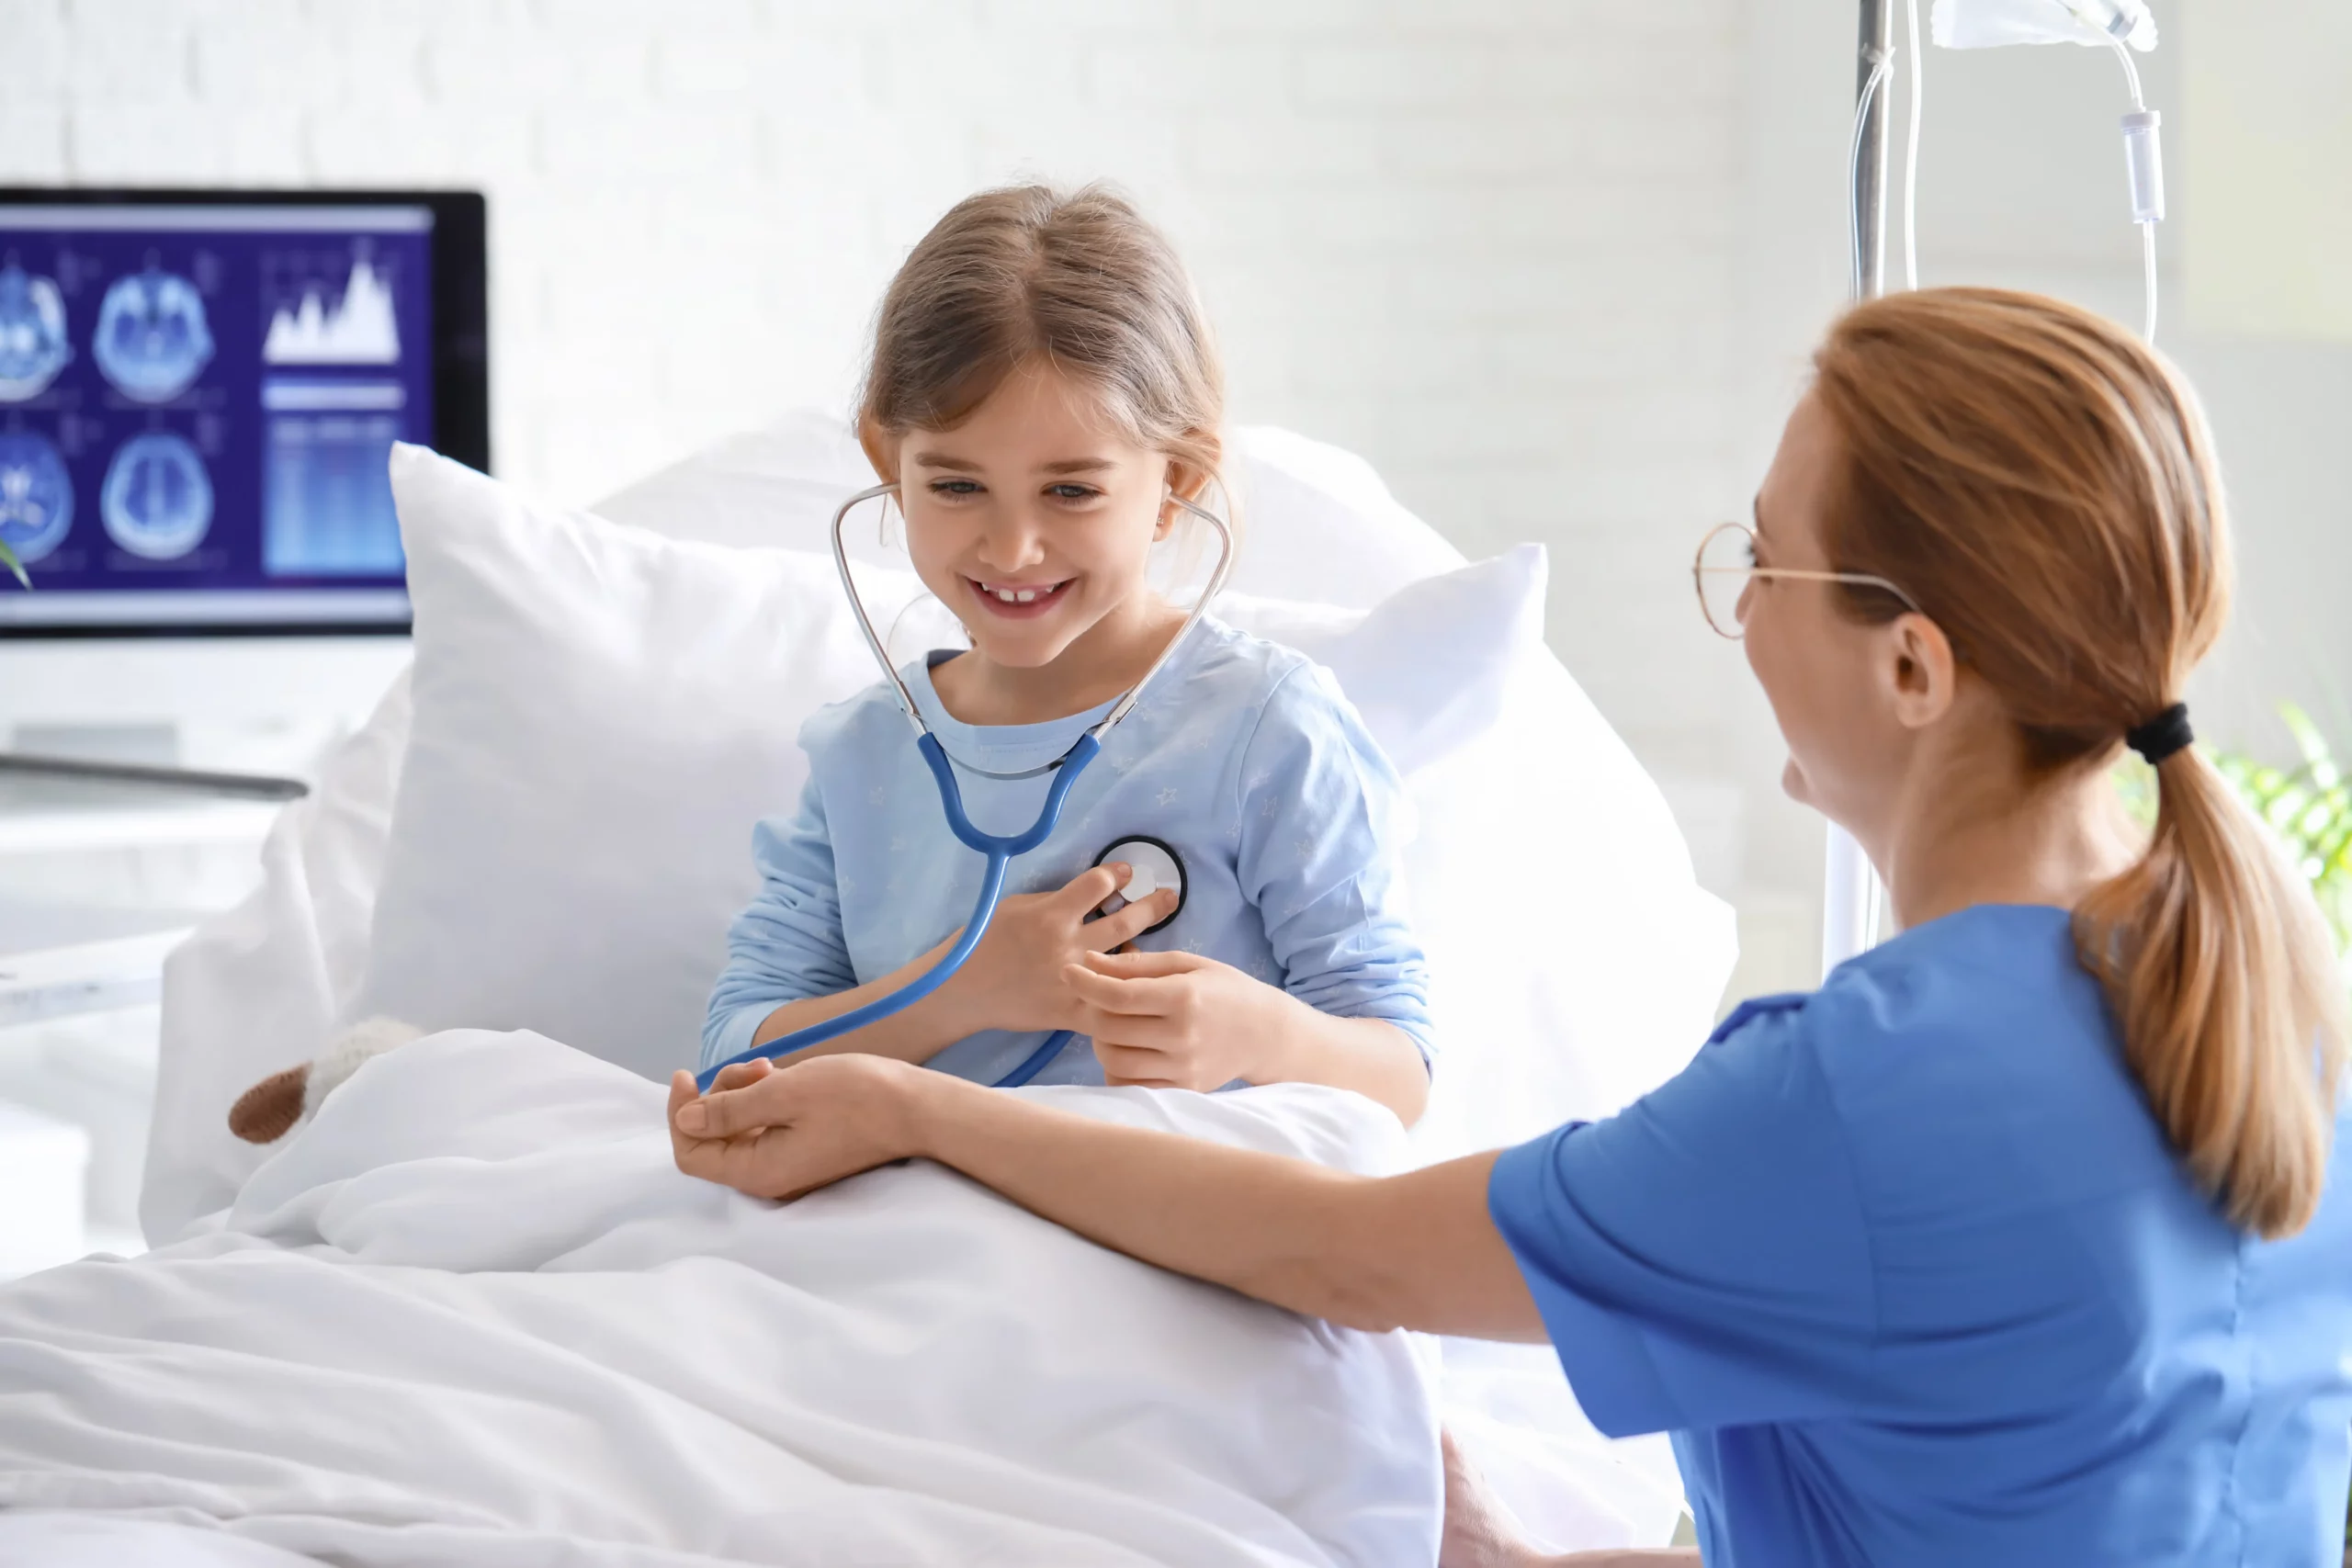    Enfermagem em Urgência e Emergência com ênfase em Pediatria e Neonatologia